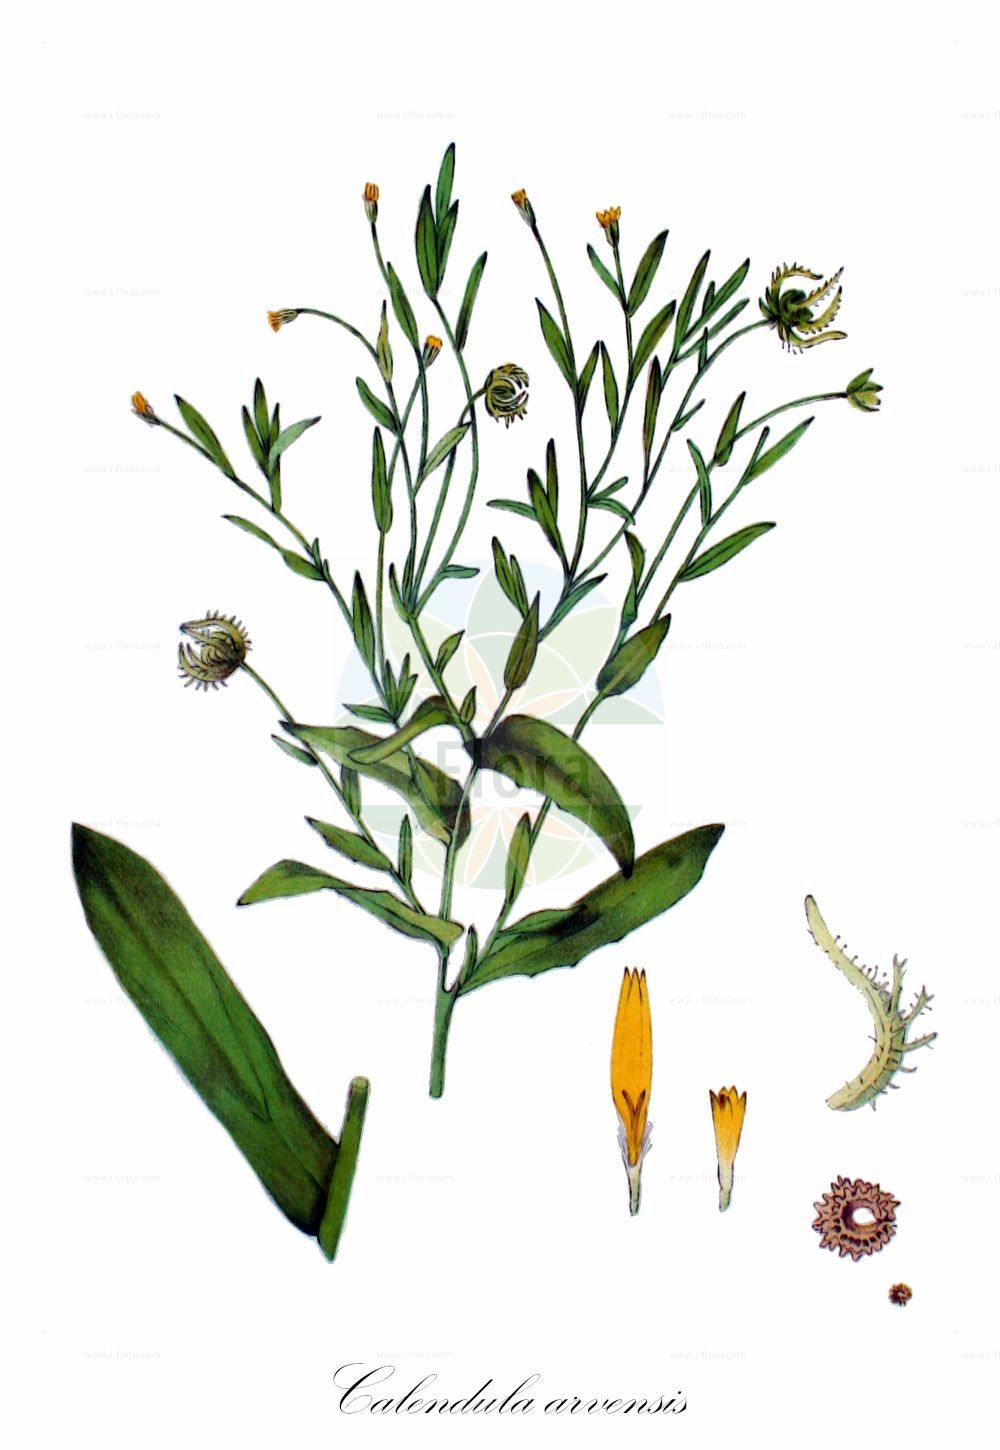 Historische Abbildung von Calendula arvensis (Acker-Ringelblume - Field Marigold). Das Bild zeigt Blatt, Bluete, Frucht und Same. ---- Historical Drawing of Calendula arvensis (Acker-Ringelblume - Field Marigold). The image is showing leaf, flower, fruit and seed.(Calendula arvensis,Acker-Ringelblume,Field Marigold,Calendula aegyptiaca,Calendula alata,Calendula arvensis,Calendula bicolor,Calendula ceratosperma,Calendula crista-galli,Calendula echinata,Calendula gracilis,Calendula macroptera,Calendula malacitana,Calendula micrantha,Calendula parviflora,Calendula persica,Calendula sancta,Calendula sinuata,Calendula sublanata,Caltha arvensis,Acker-Ringelblume,Field Marigold,Field Calendula,Calendula,Ringelblume,Marigold,Asteraceae,Korbblütengewächse,Daisy family,Blatt,Bluete,Frucht,Same,leaf,flower,fruit,seed,Kops (1800-1934))